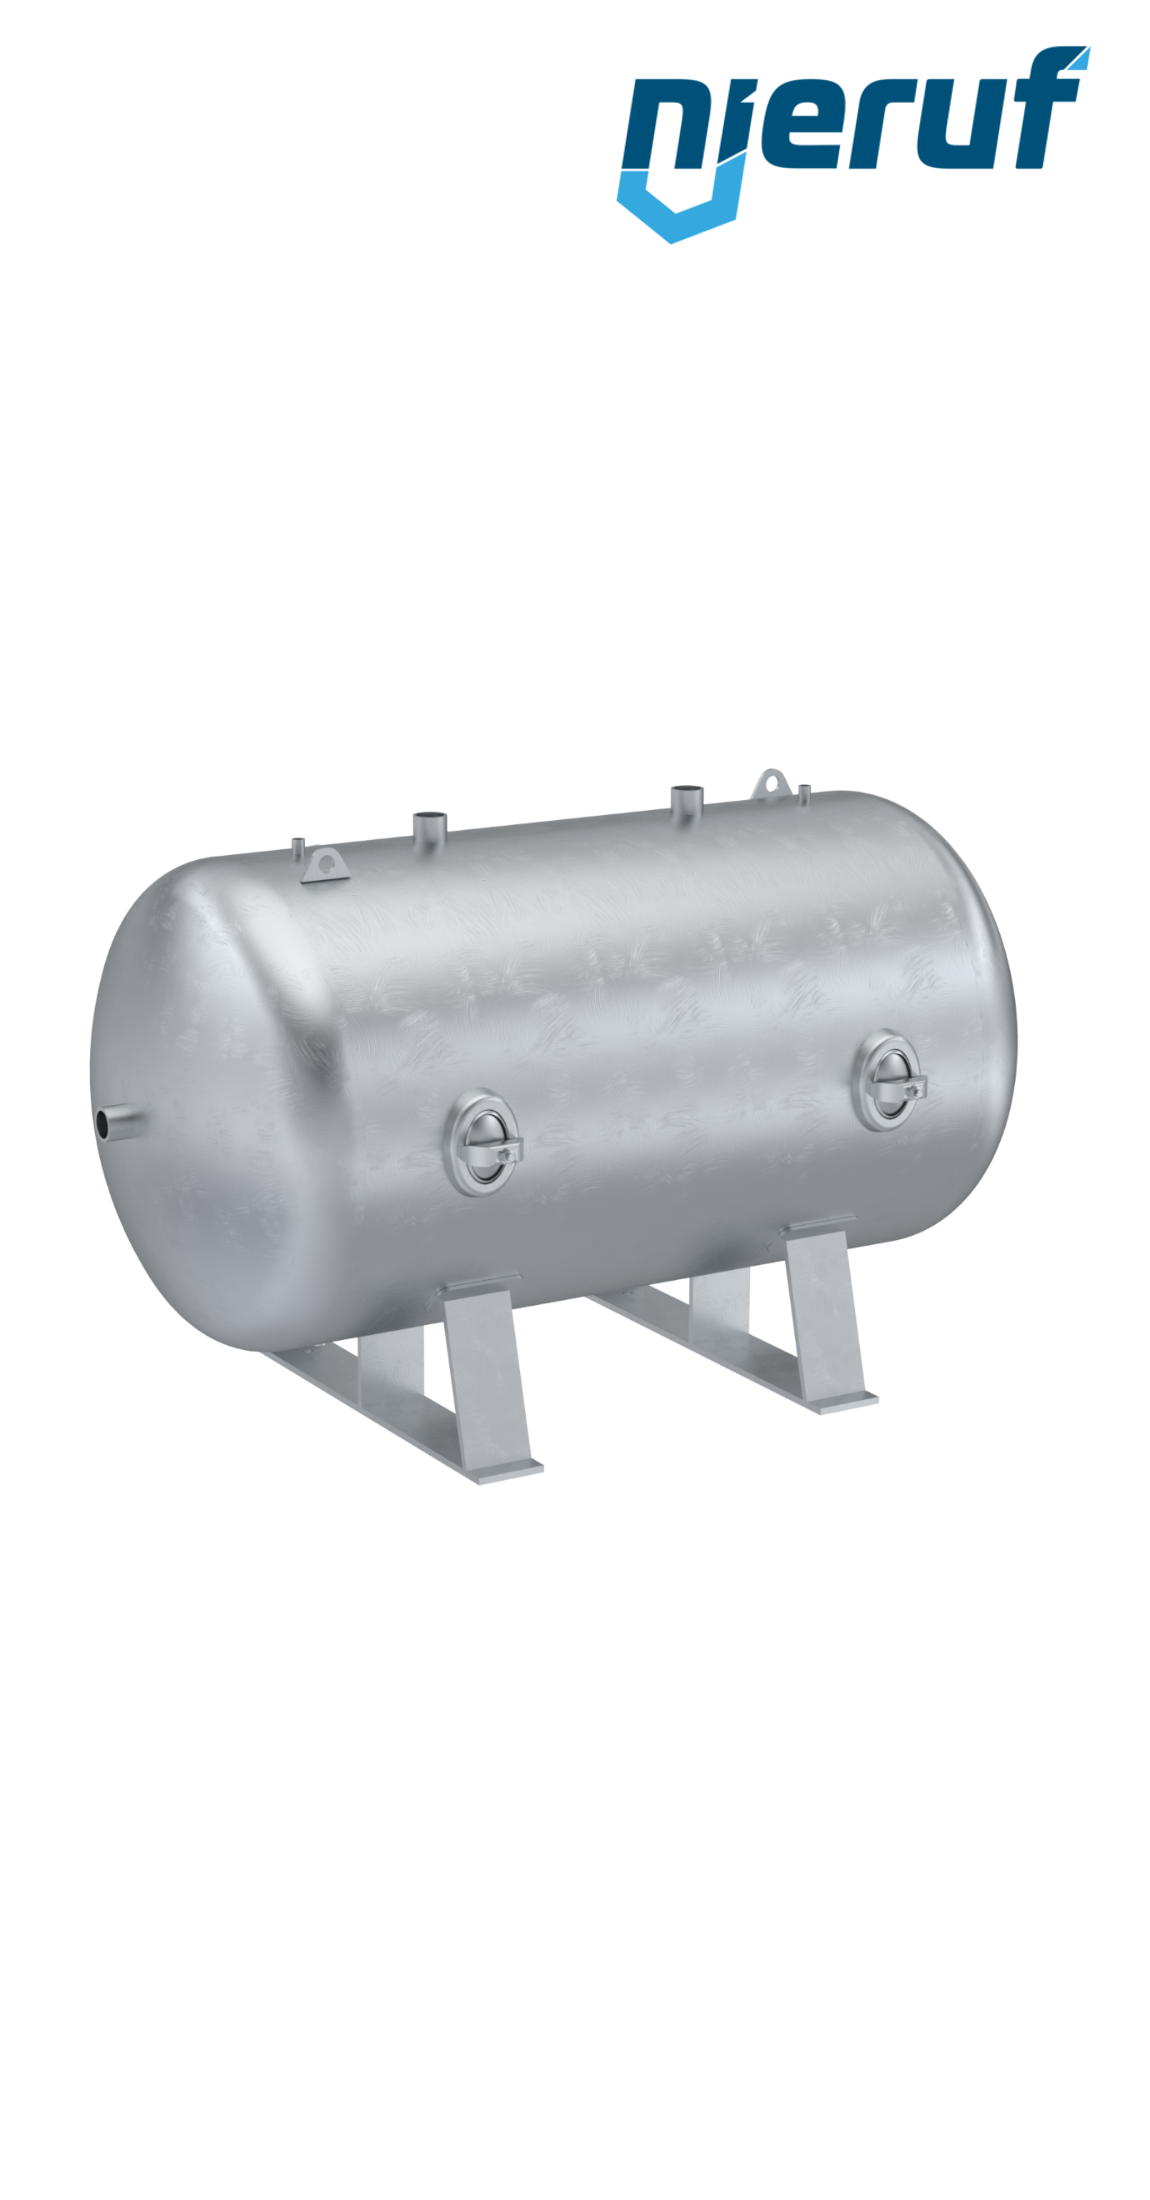 Serbatoio a pressione orizzontale BE01 1000 litri, 0-11 bar, acciaio primerizzato